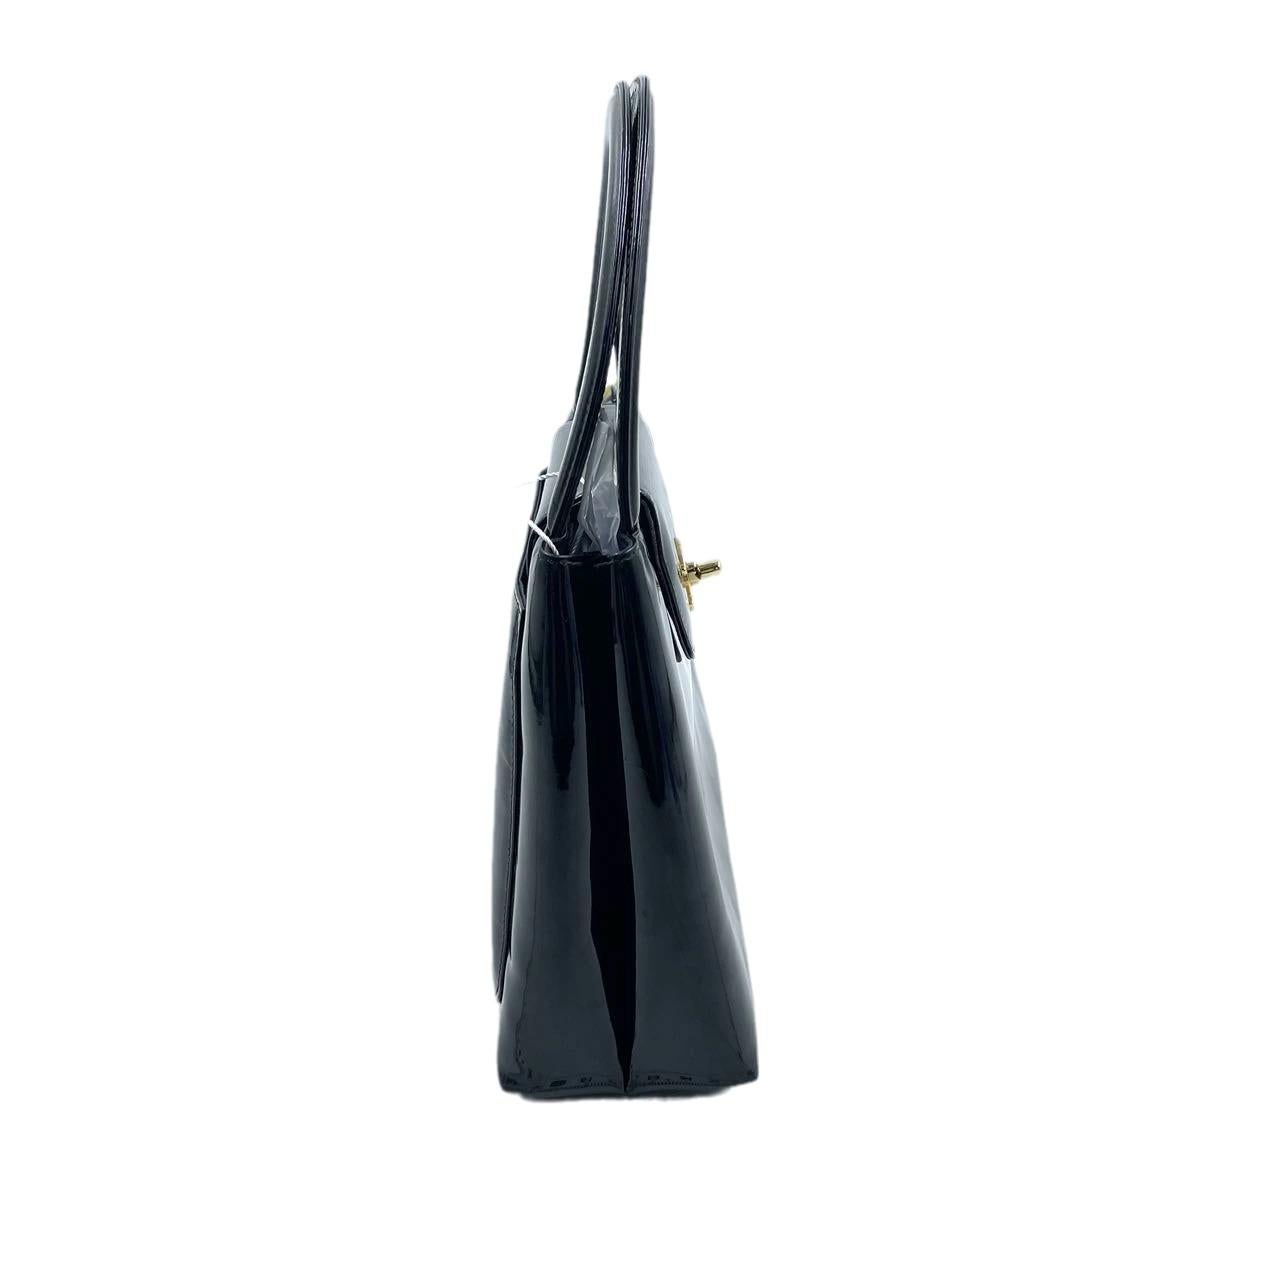 Possédez un rêve parisien : Chanel By Vintage en cuir verni noir.

Ce sac emblématique dégage une élégance intemporelle, le vernis brillant reflétant des années d'amour (et d'usure légère). La quincaillerie plaquée or 24 carats ajoute une touche de